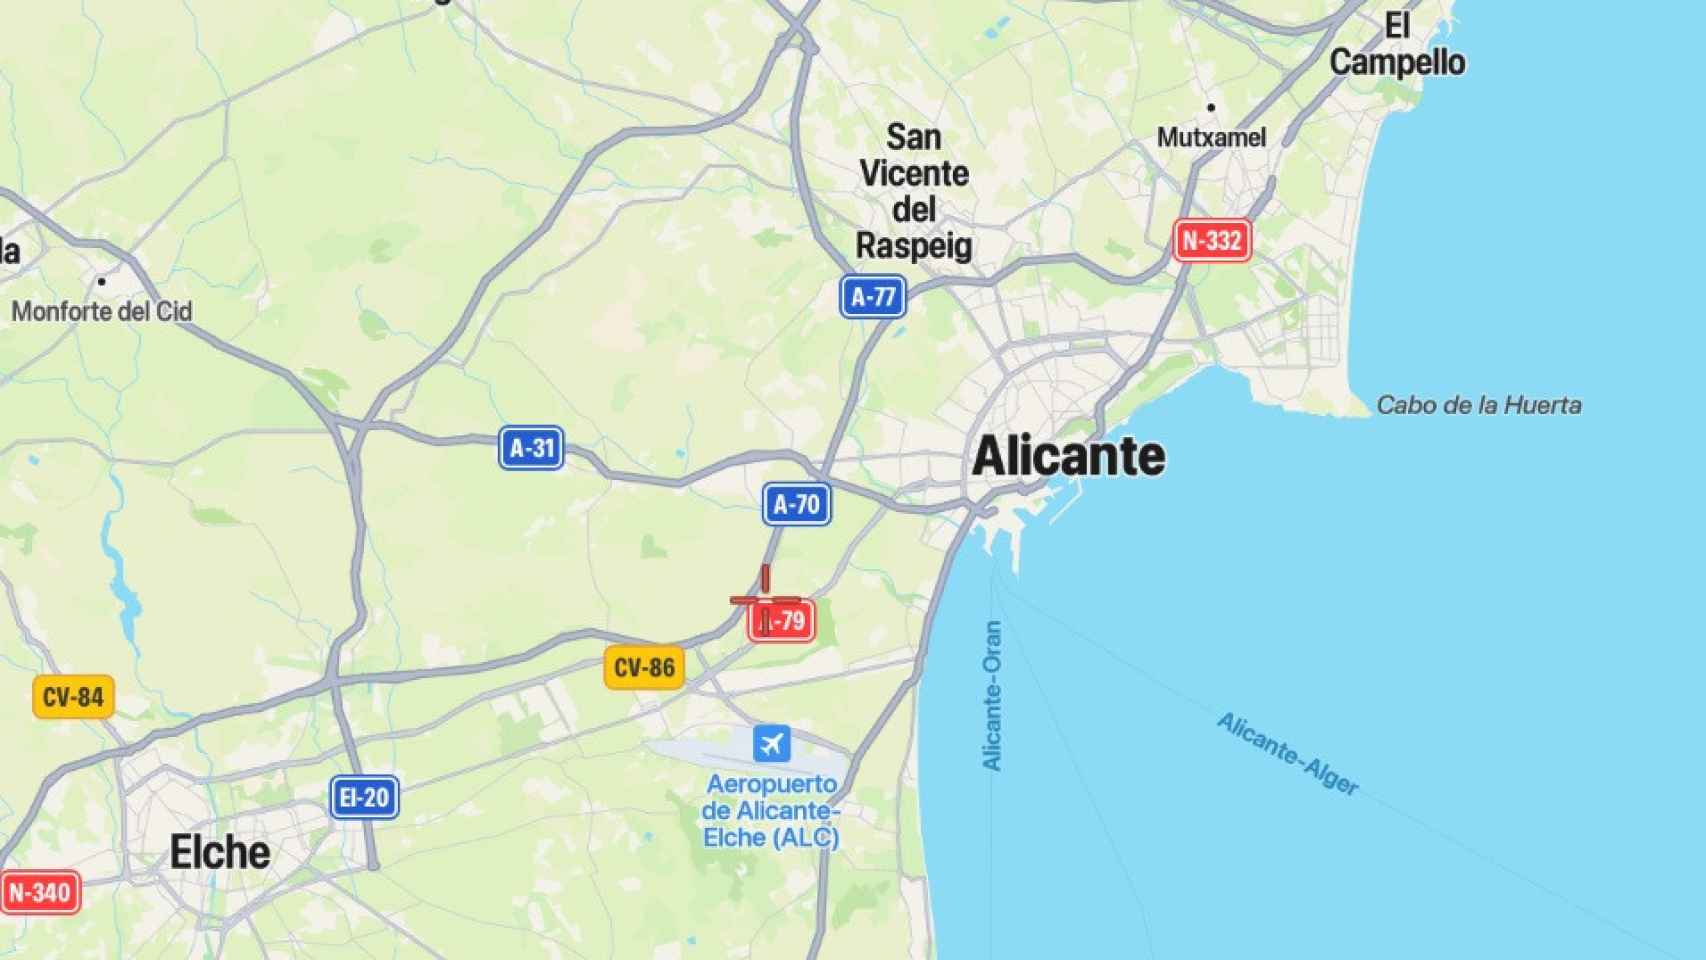 Los municipios de Alicante son colindantes y apenas les separan una veintena de kilómetros entre sus núcleos urbanos.